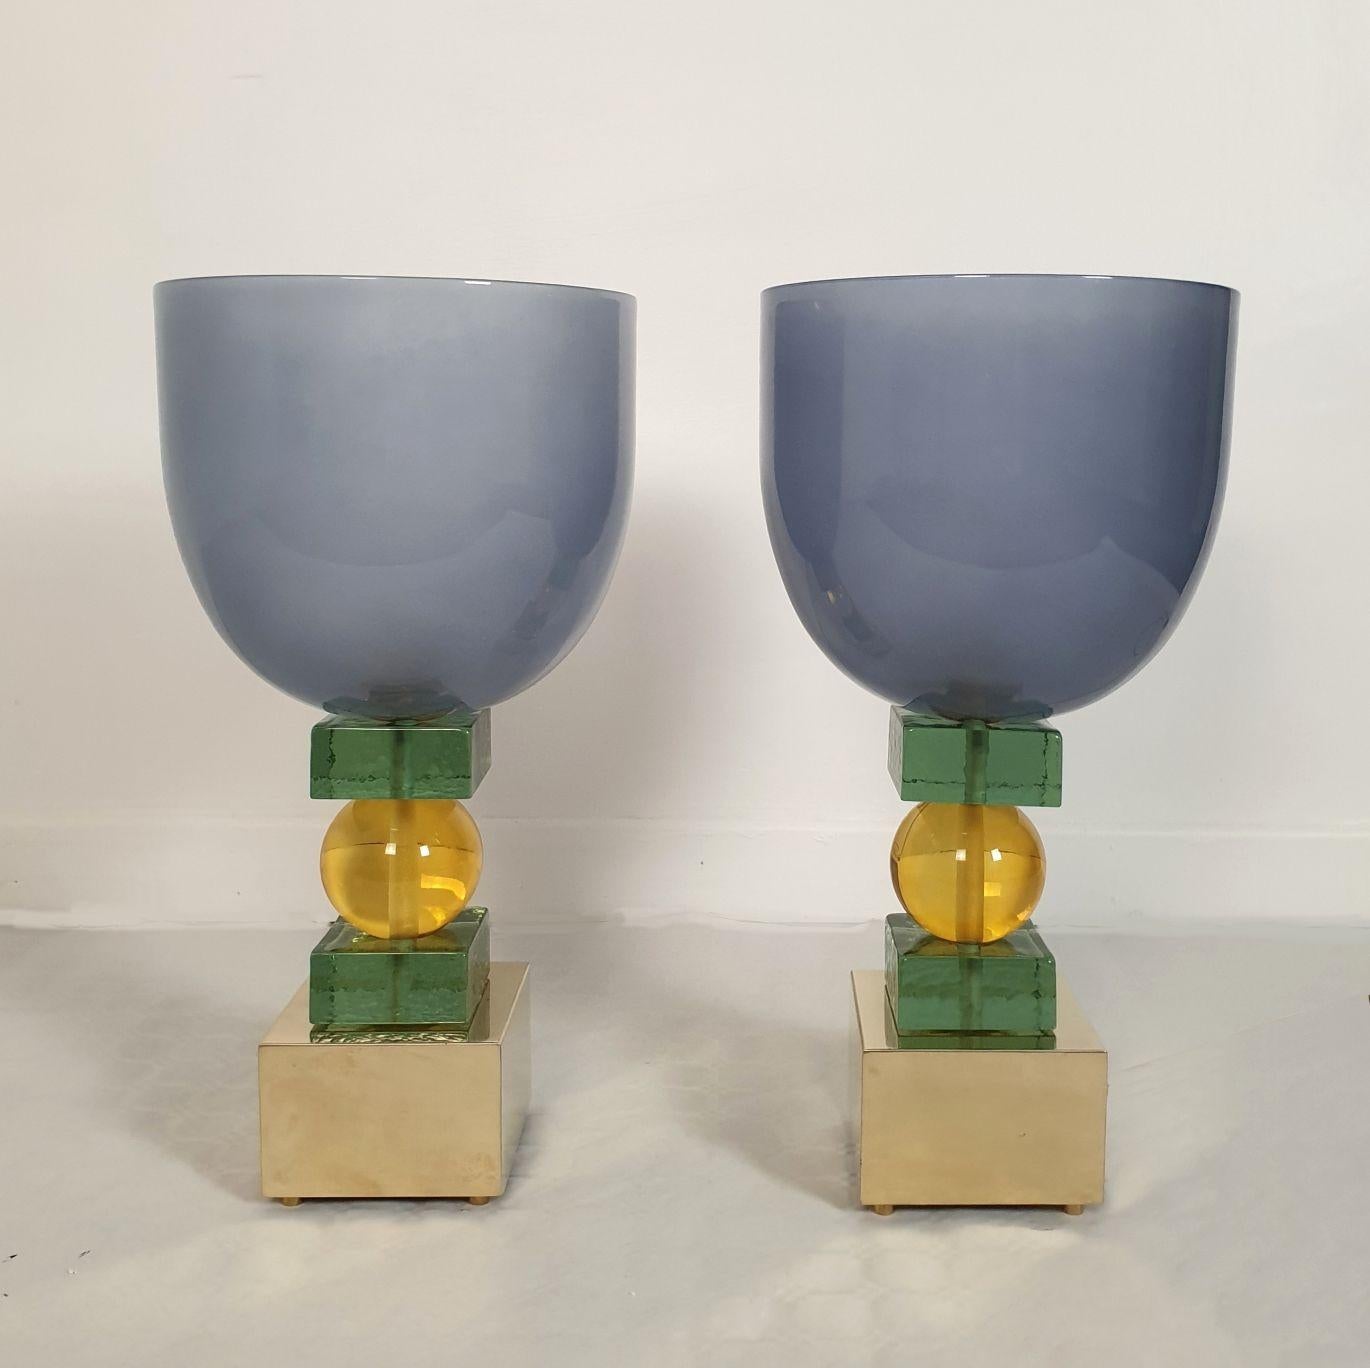 Grandes lampes de table en verre Murano de style moderne du milieu du siècle, Italie, années 1980. Une paire.
Éclairage de style italien Memphis. Peut être utilisé comme lampe de bureau.
La paire de lampes est colorée : un vase supérieur bleu-gris